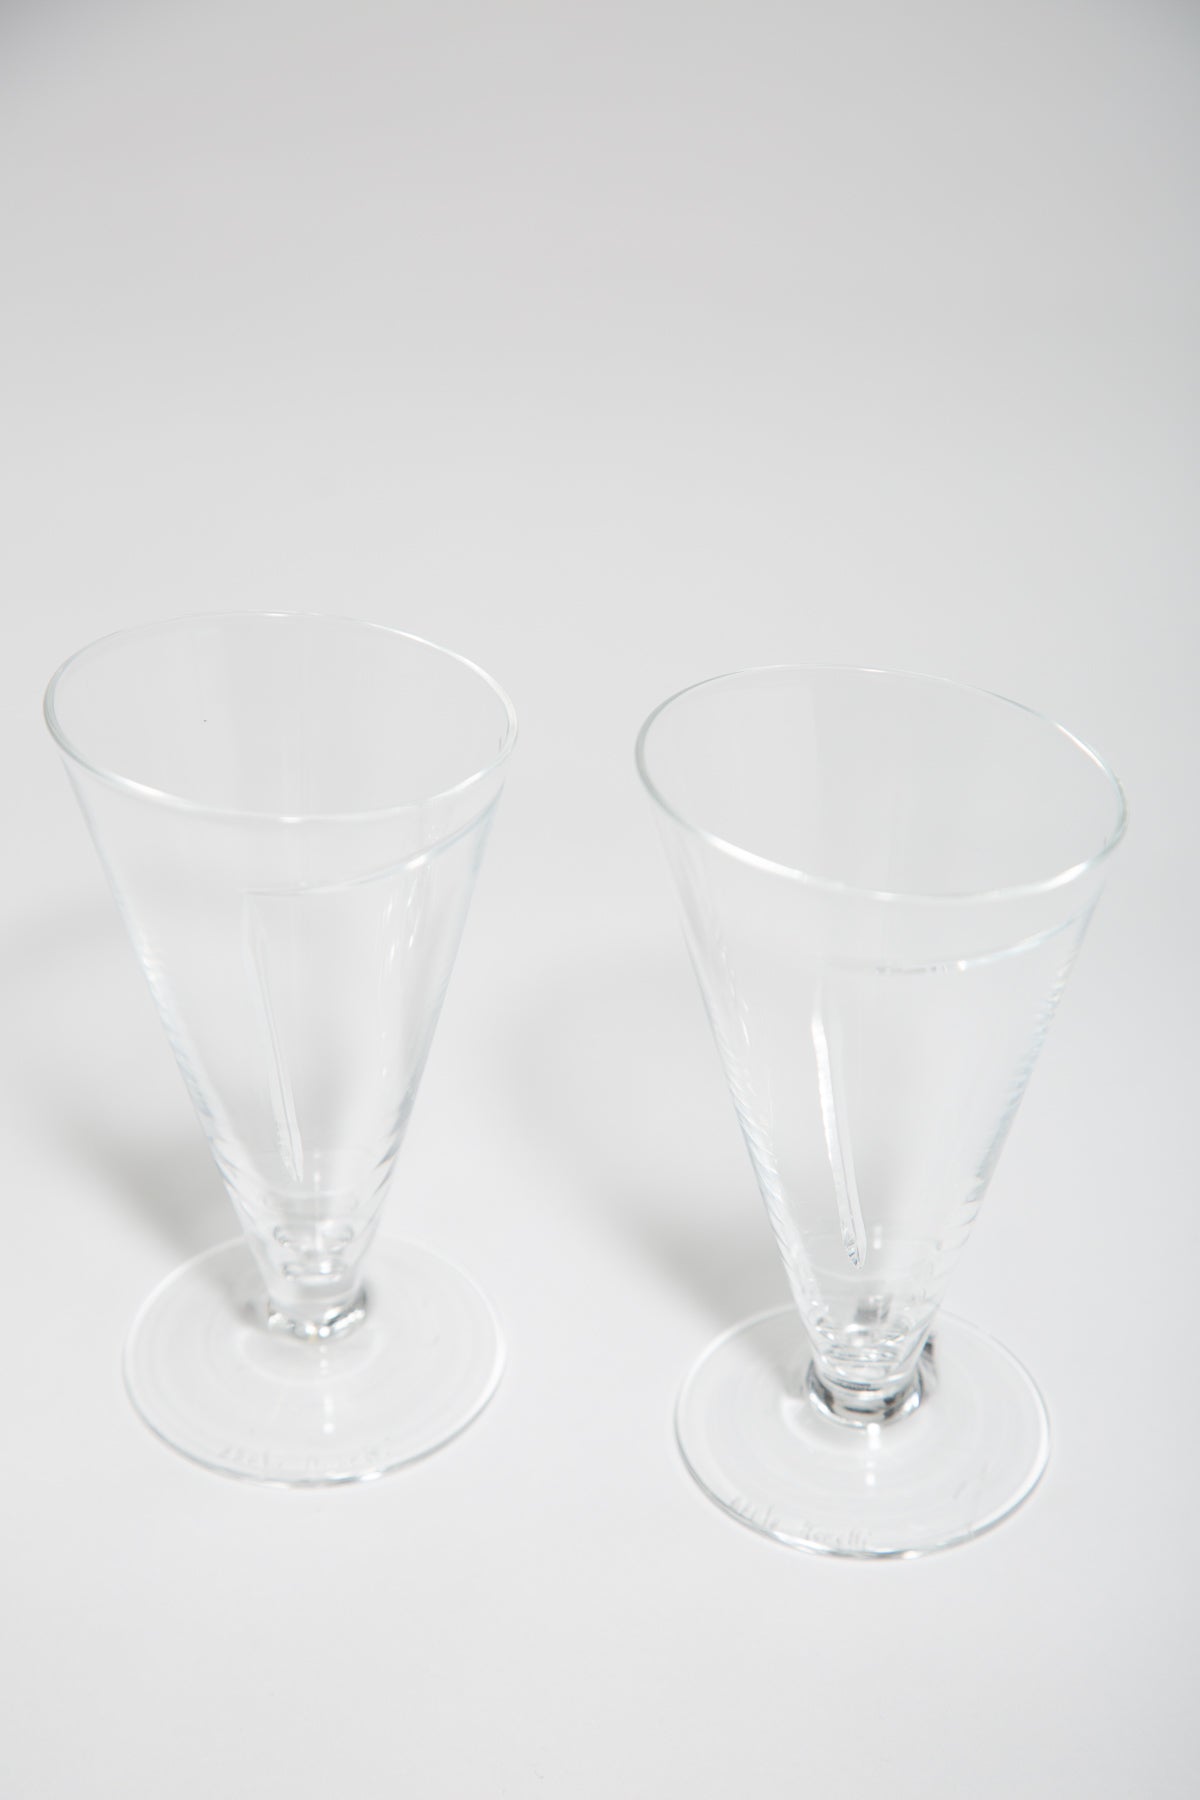 MAXFIELD PRIVATE COLLECTION | CARLO MORETTI PAIR OF WINE GLASSES